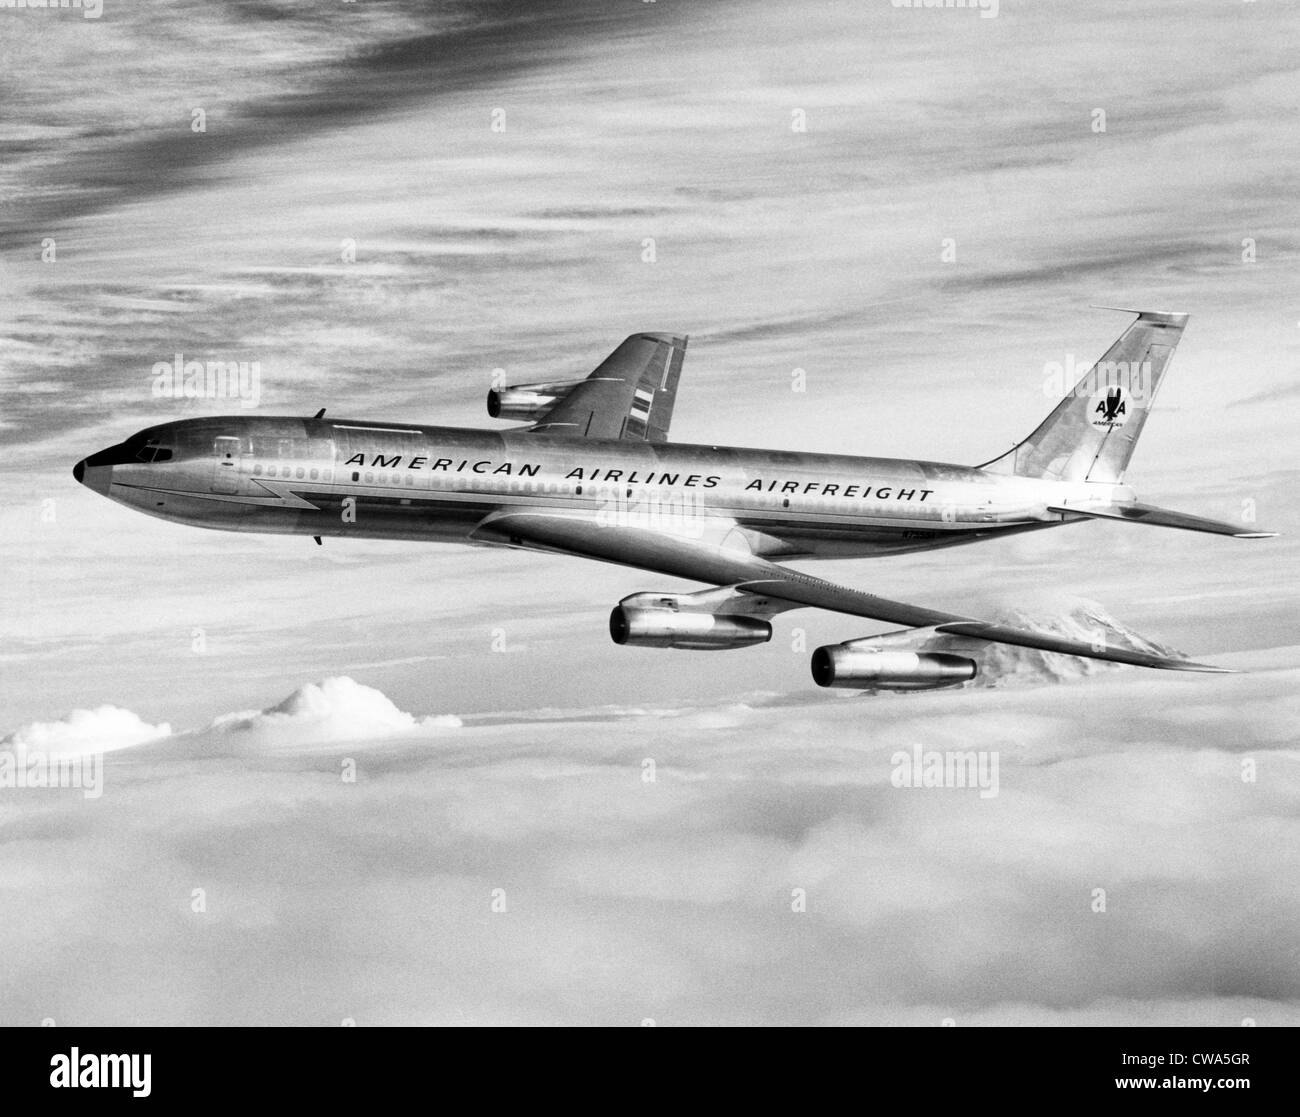 La aerolínea estadounidense Boeing Astrojet en vuelo, 1964. Cortesía: CSU Archives/Everett Collection Foto de stock